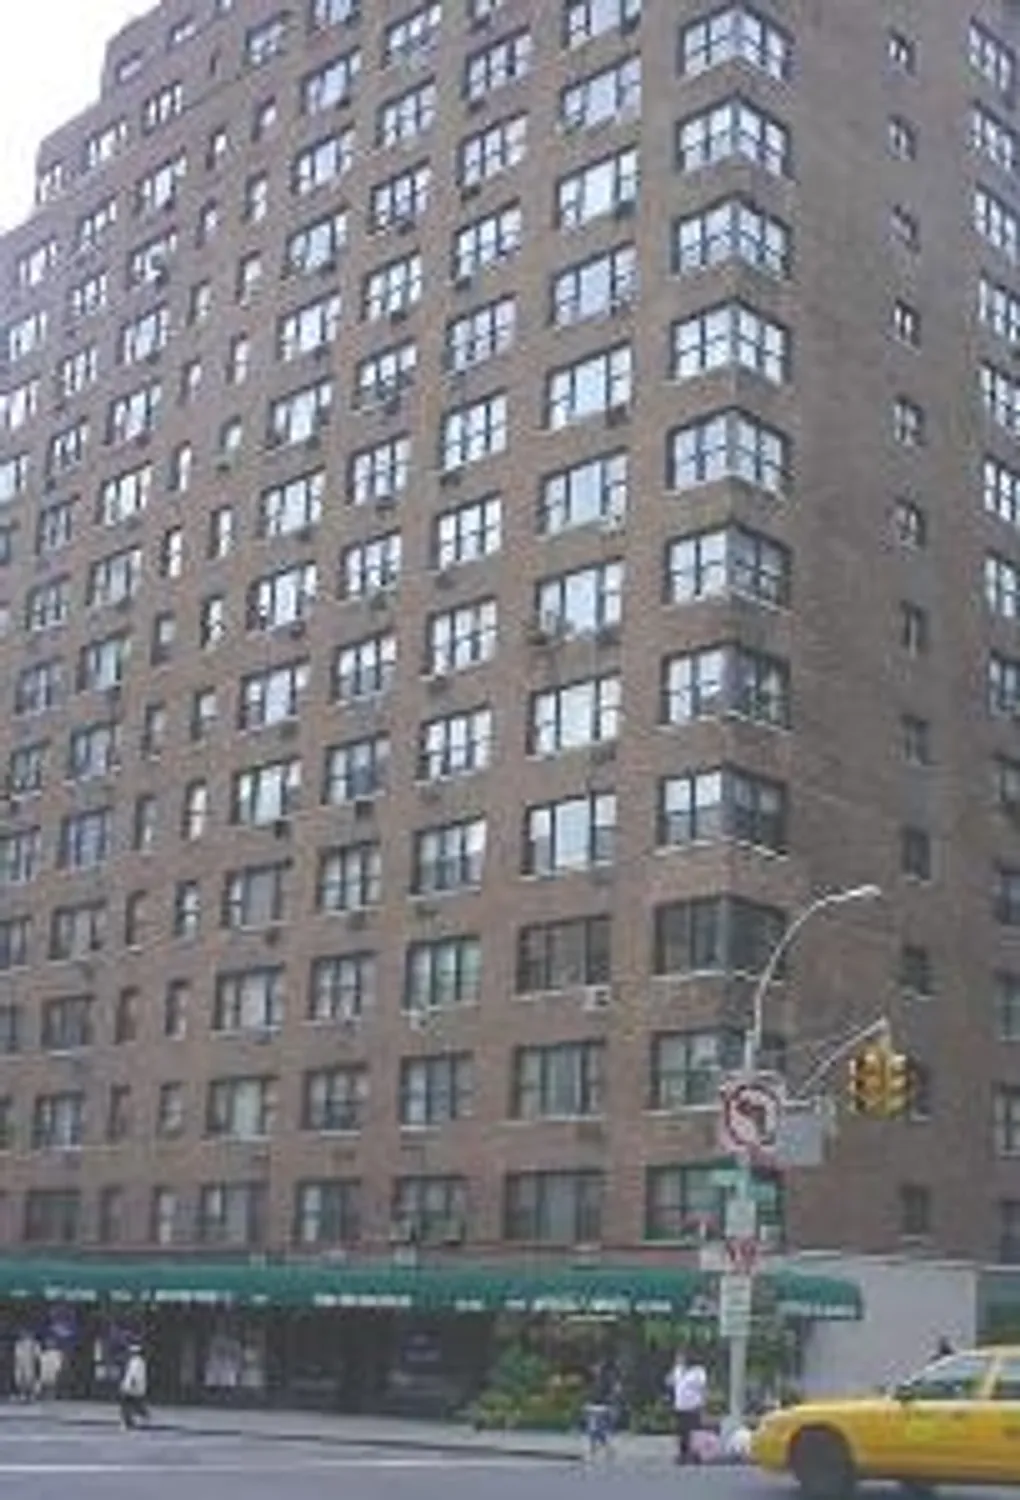 Condominium on the corner of 79th & York Avenue